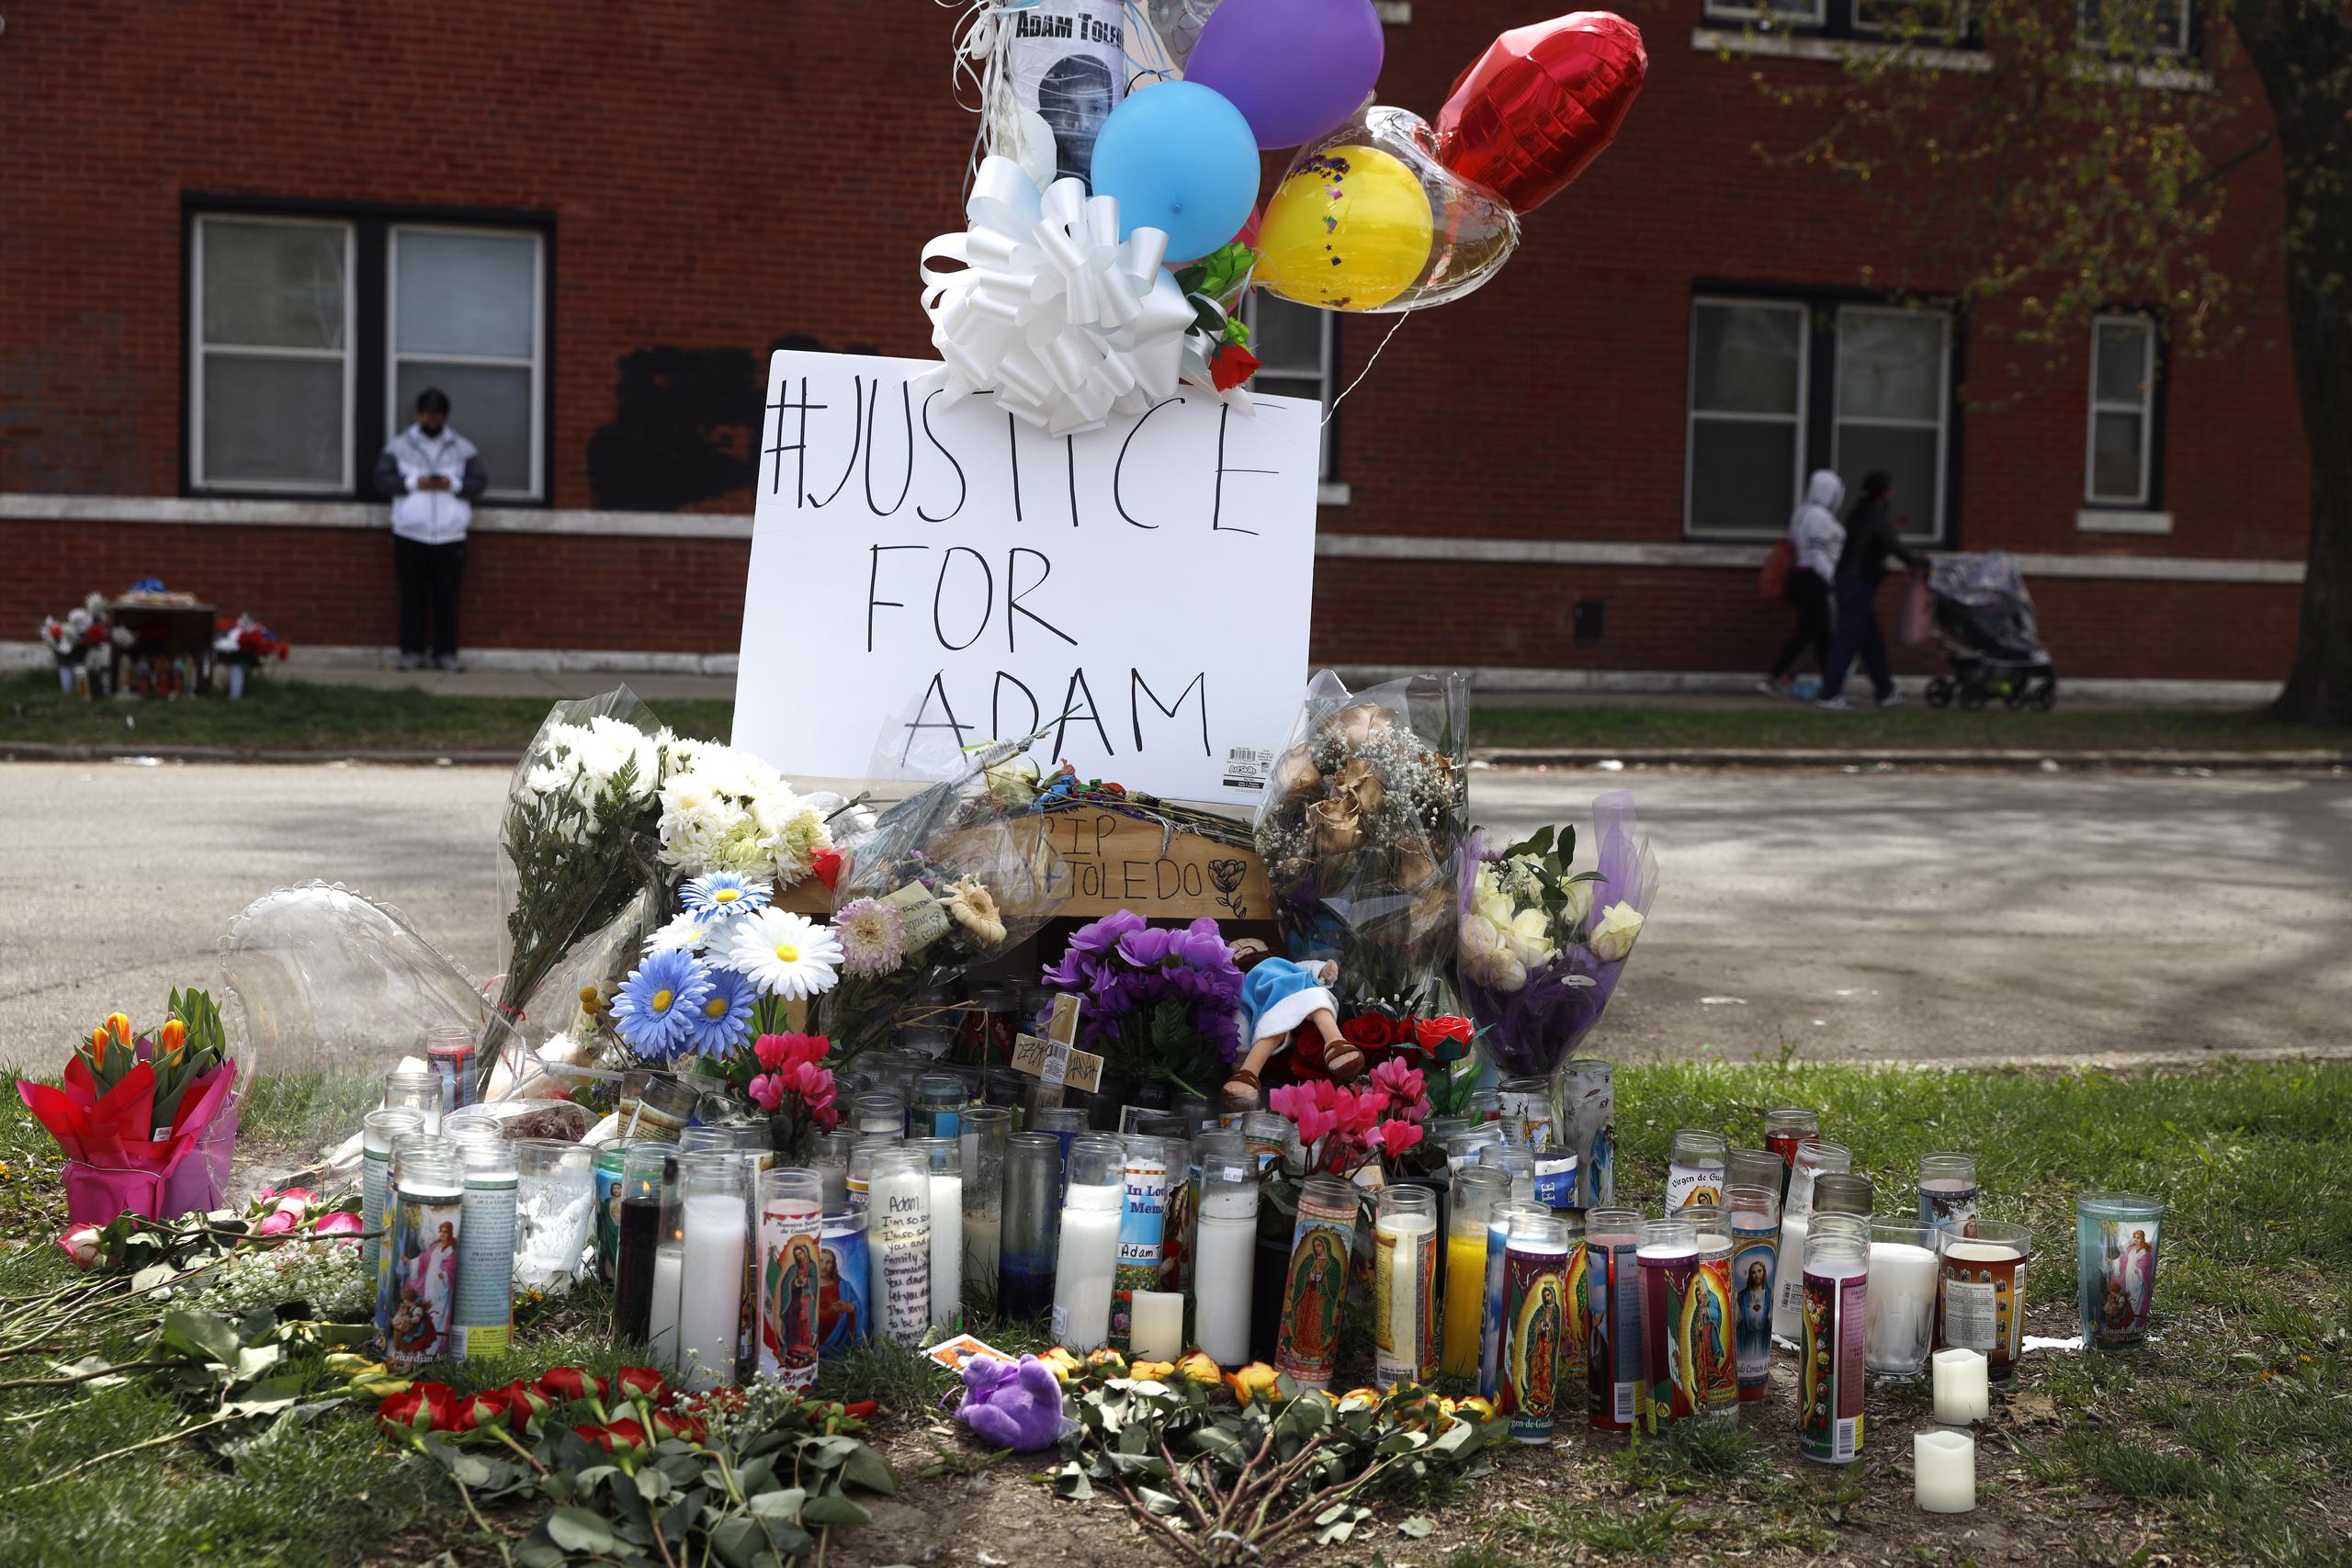 La manifestación culminará con una vigilia en homenaje a los muertos por la policía, como fue el caso del adolescente Adam Toledo, de 13 años.